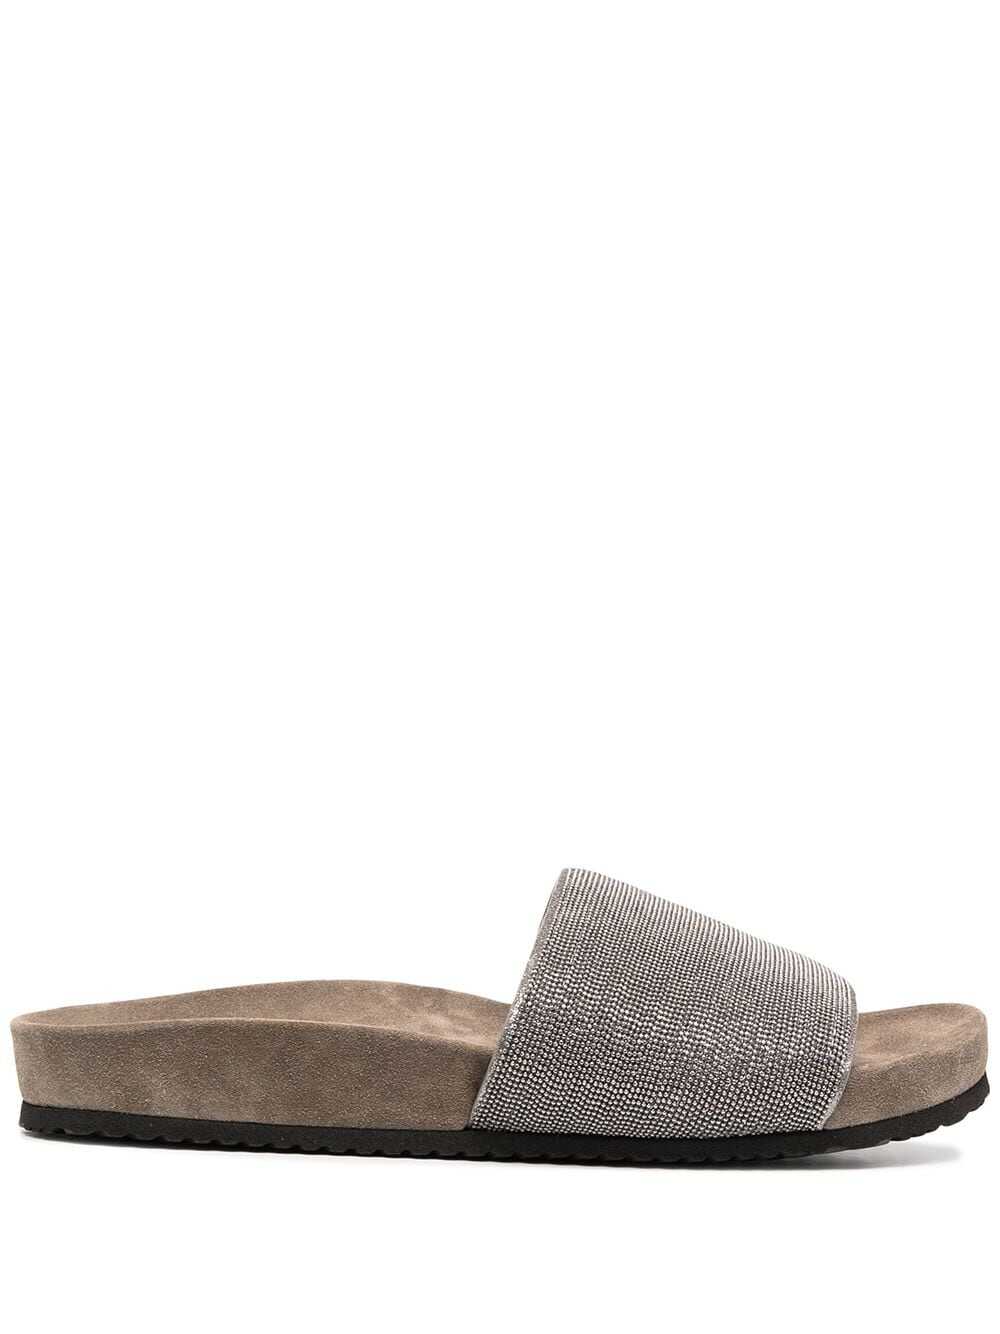 Brunello Cucinelli Sandals Grey Grey